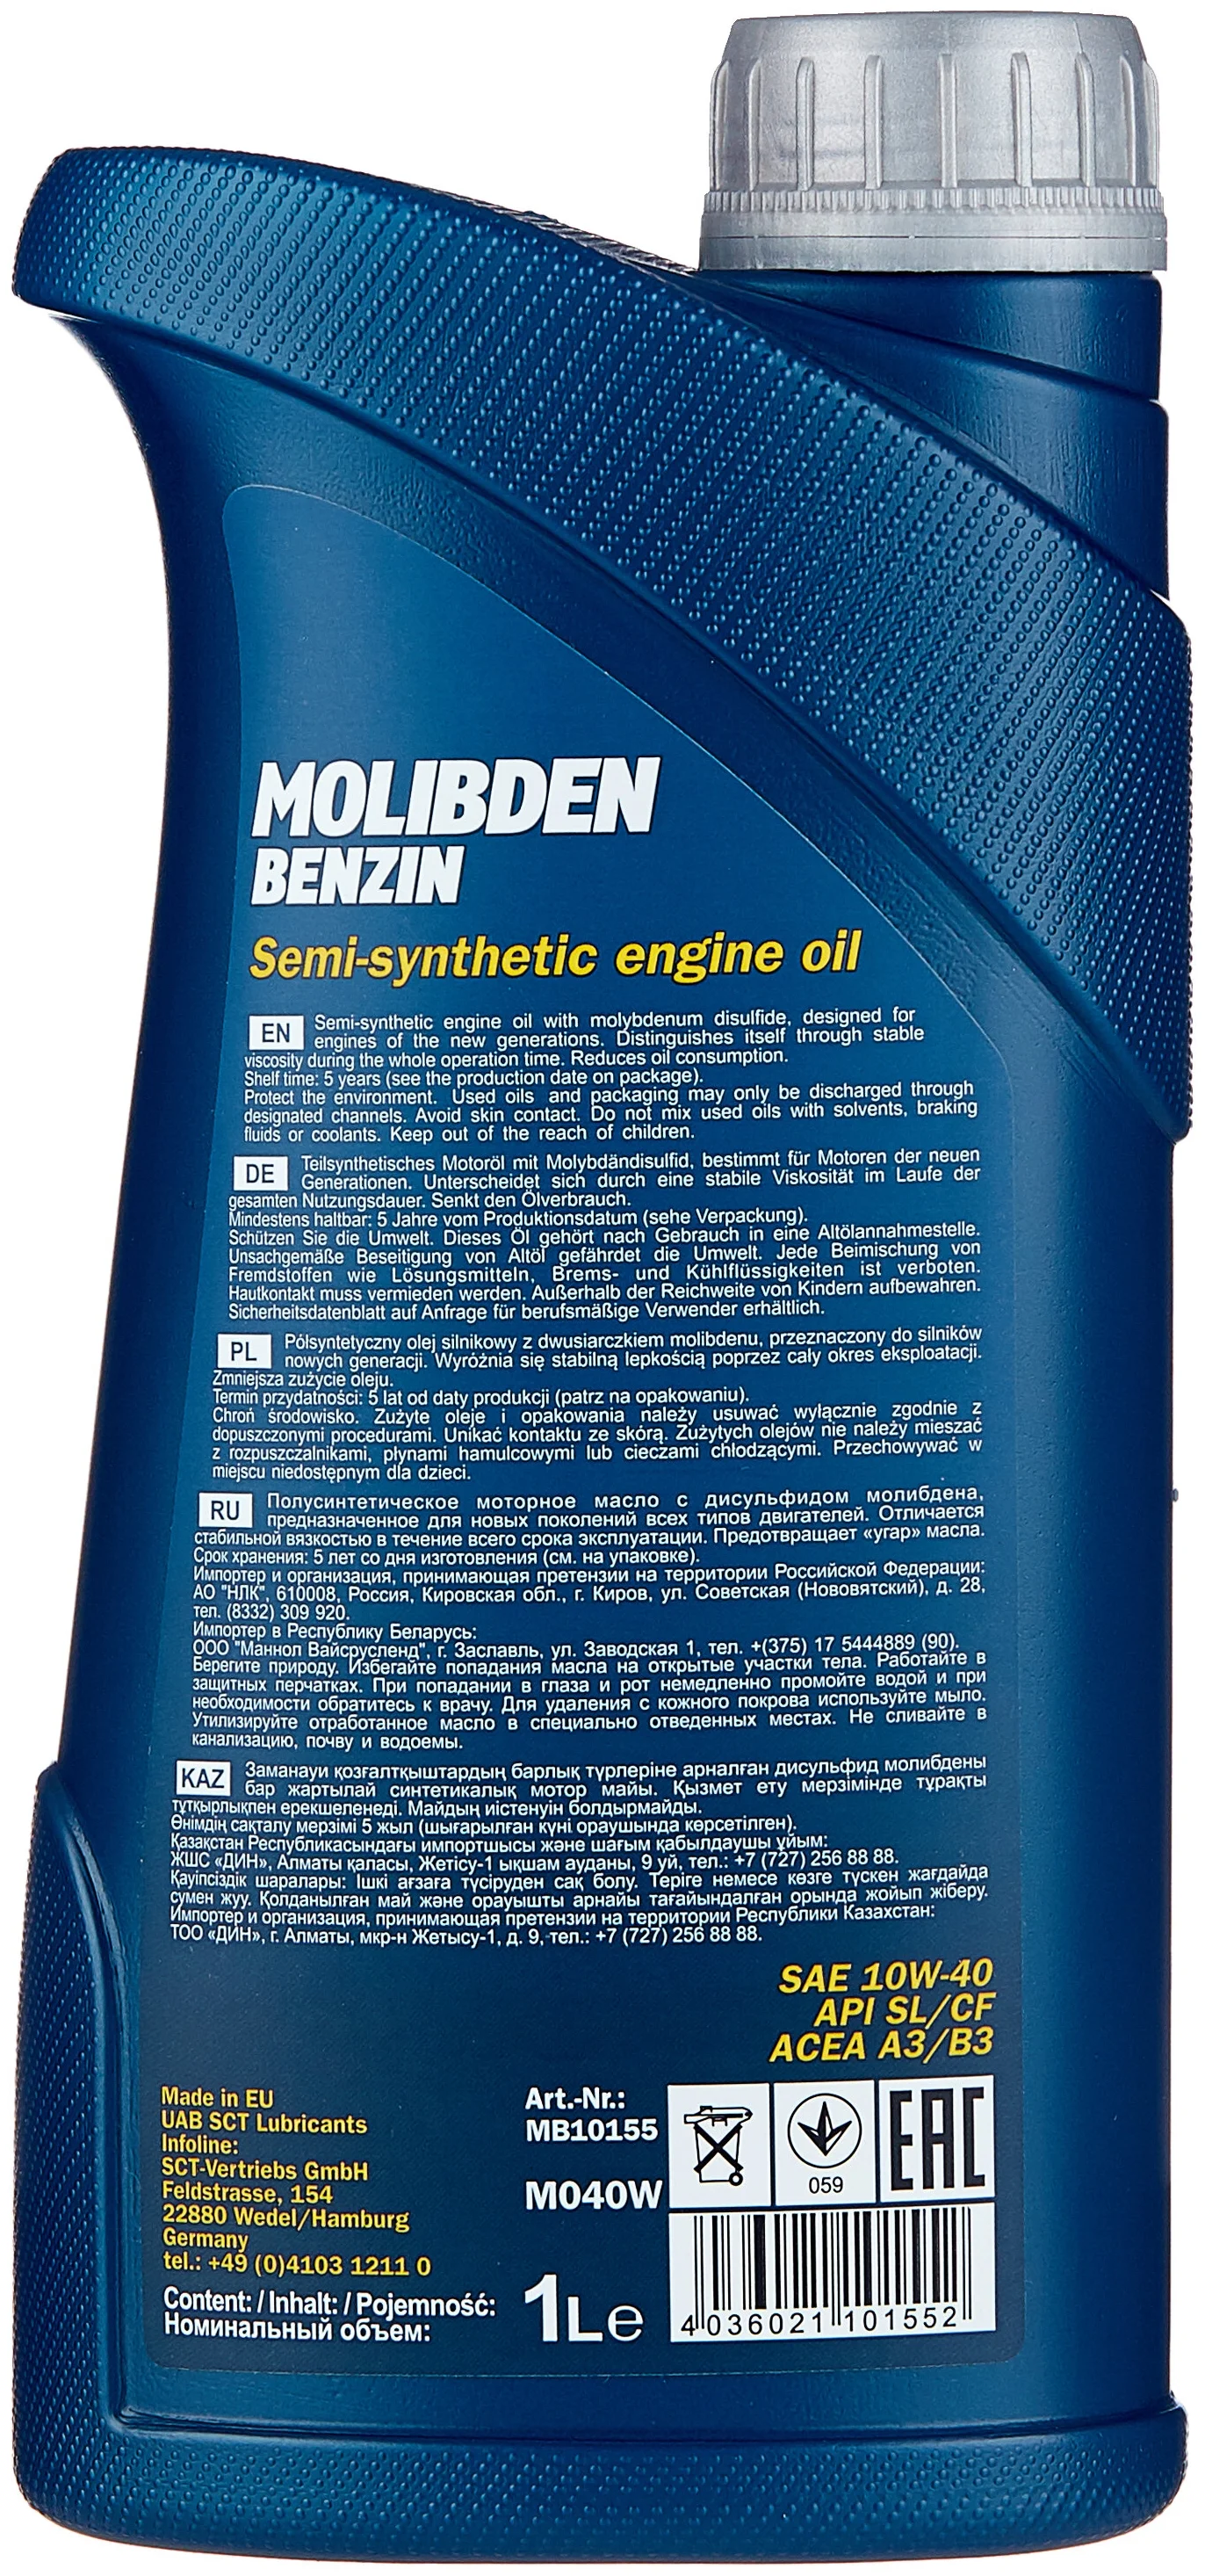 Mannol Molibden Benzin 10W-40 - для турбированных двигателей